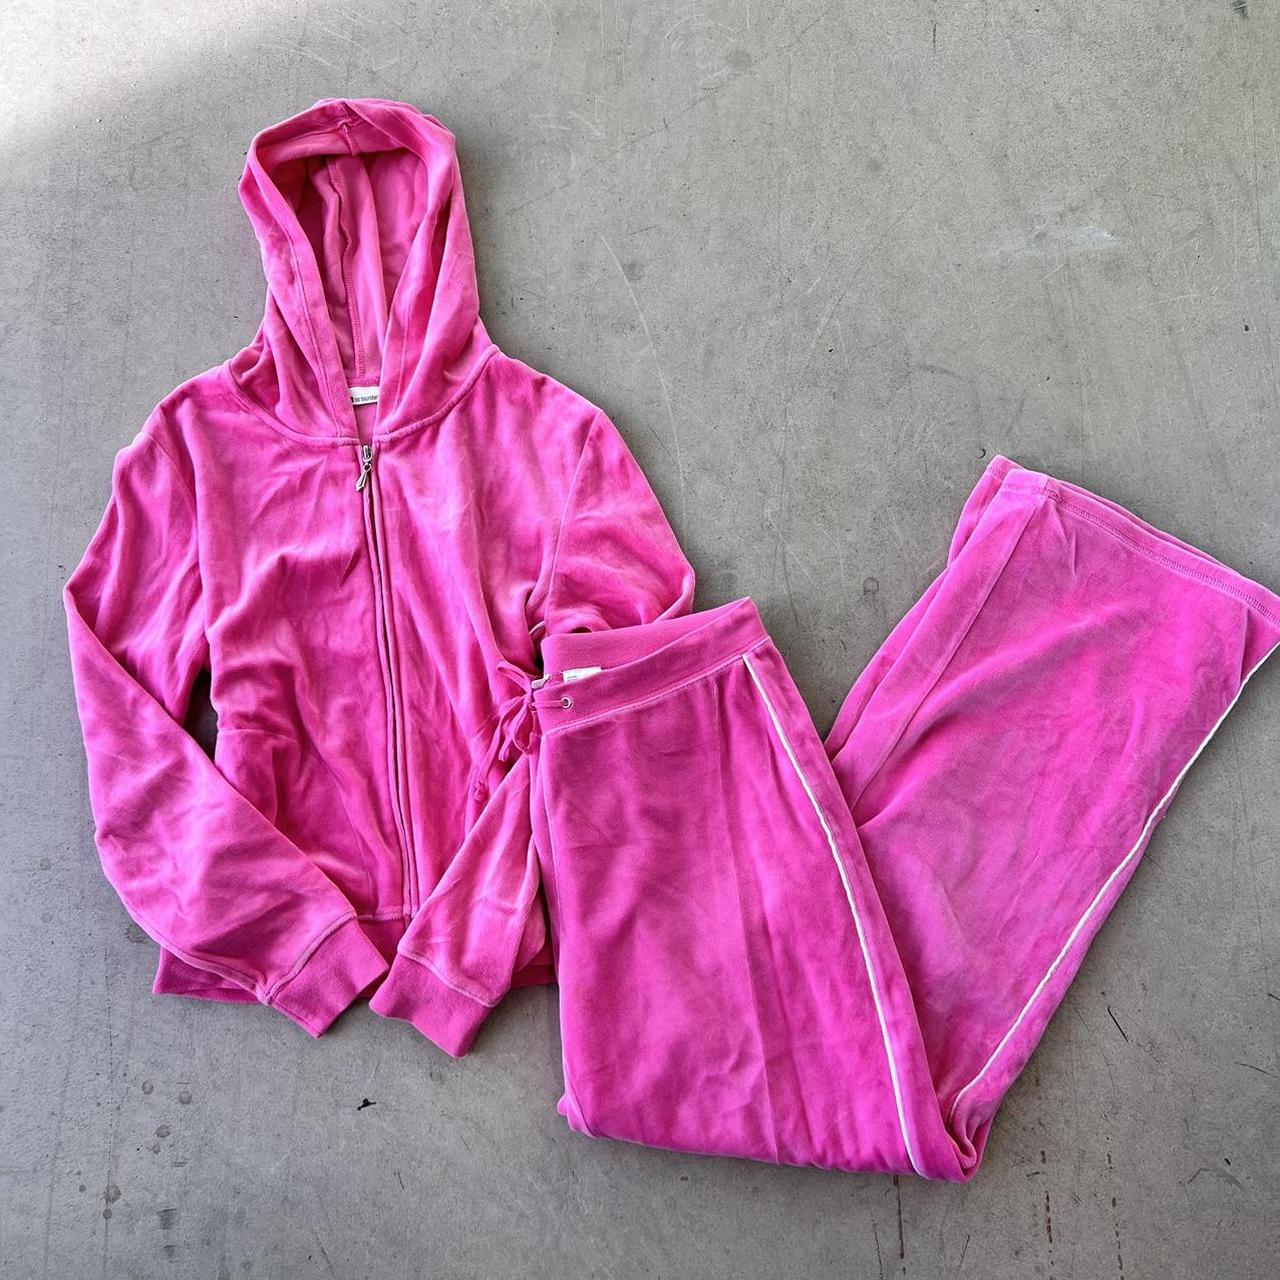 y2k 2000s pink velour jumpsuit set 🎀🎀💋 size m ... - Depop